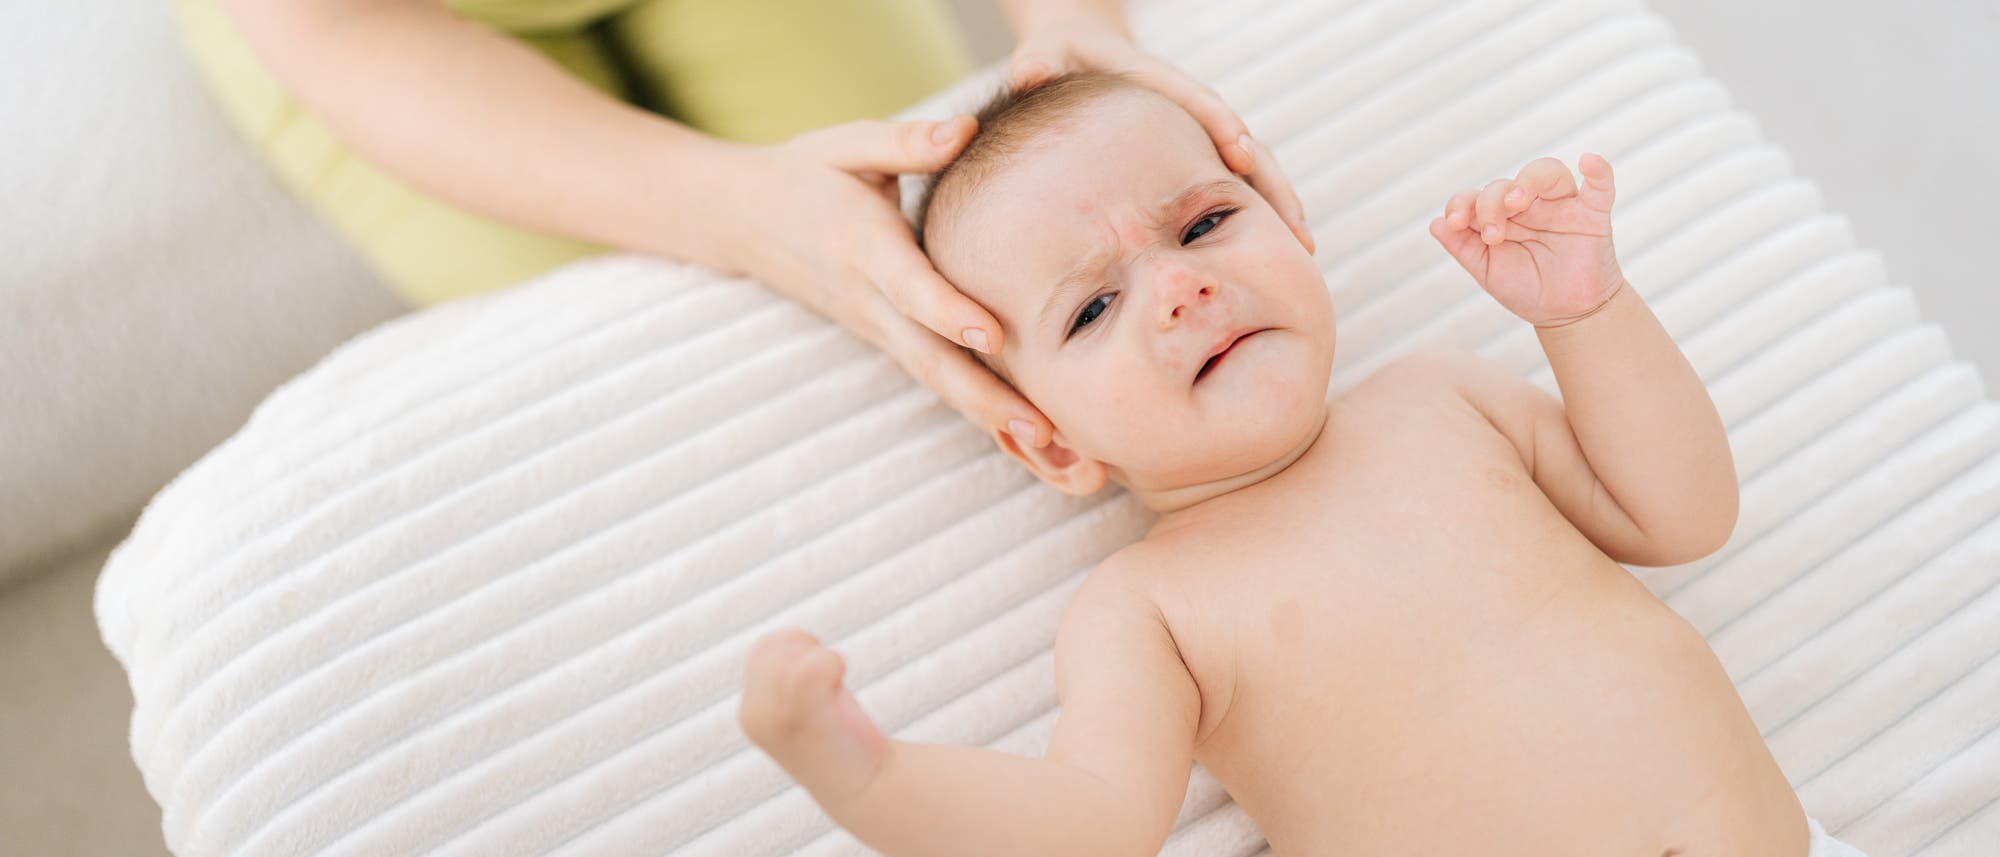 Ein Baby liegt auf einer Behandlunsgliege und wird von einem Osteopathen mit beiden Händen am Kopf angefasst 